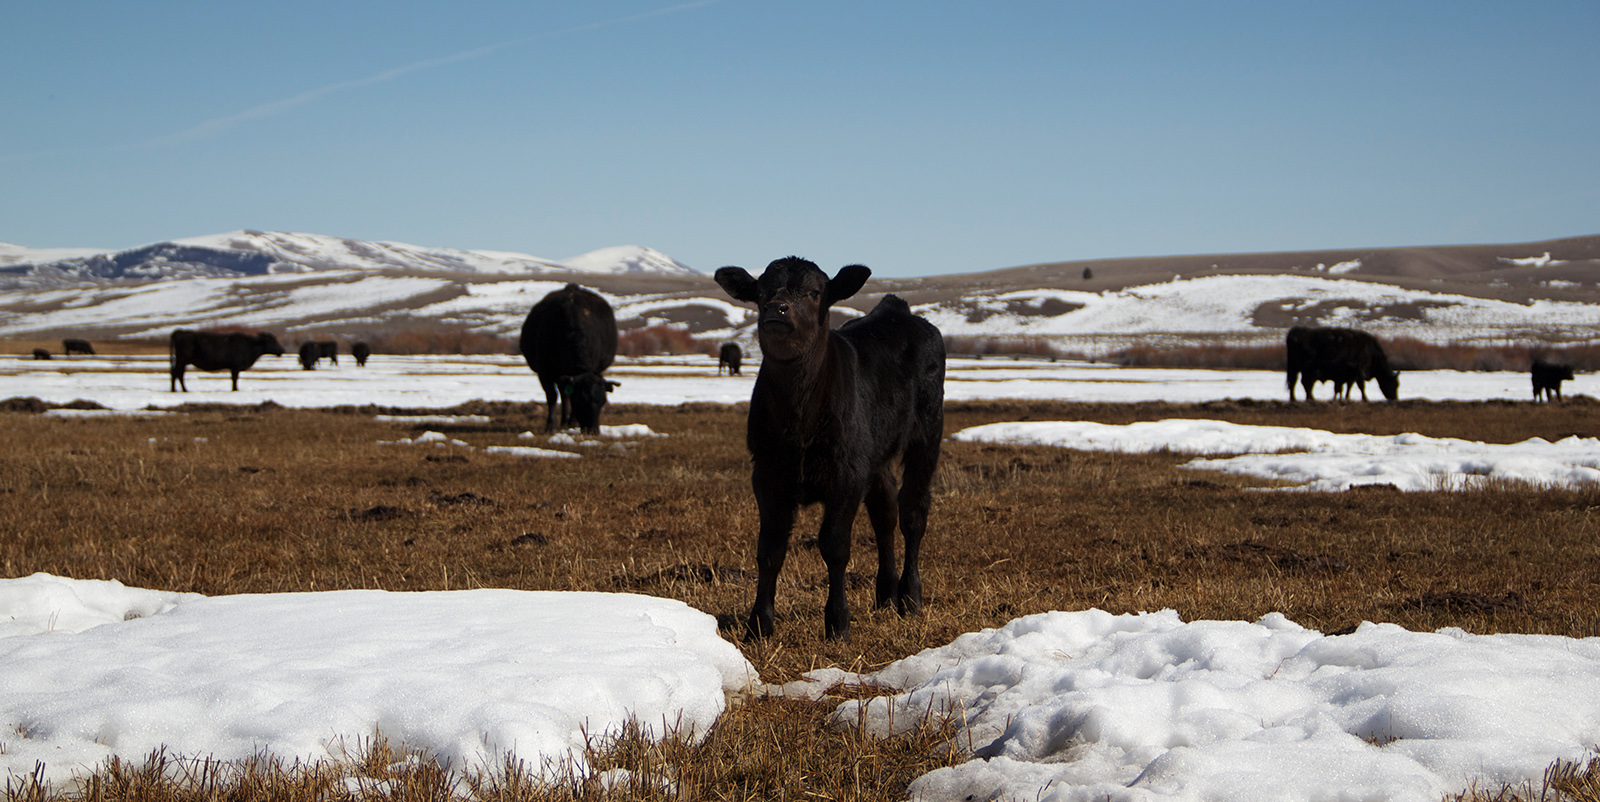 A calf in a snowy field